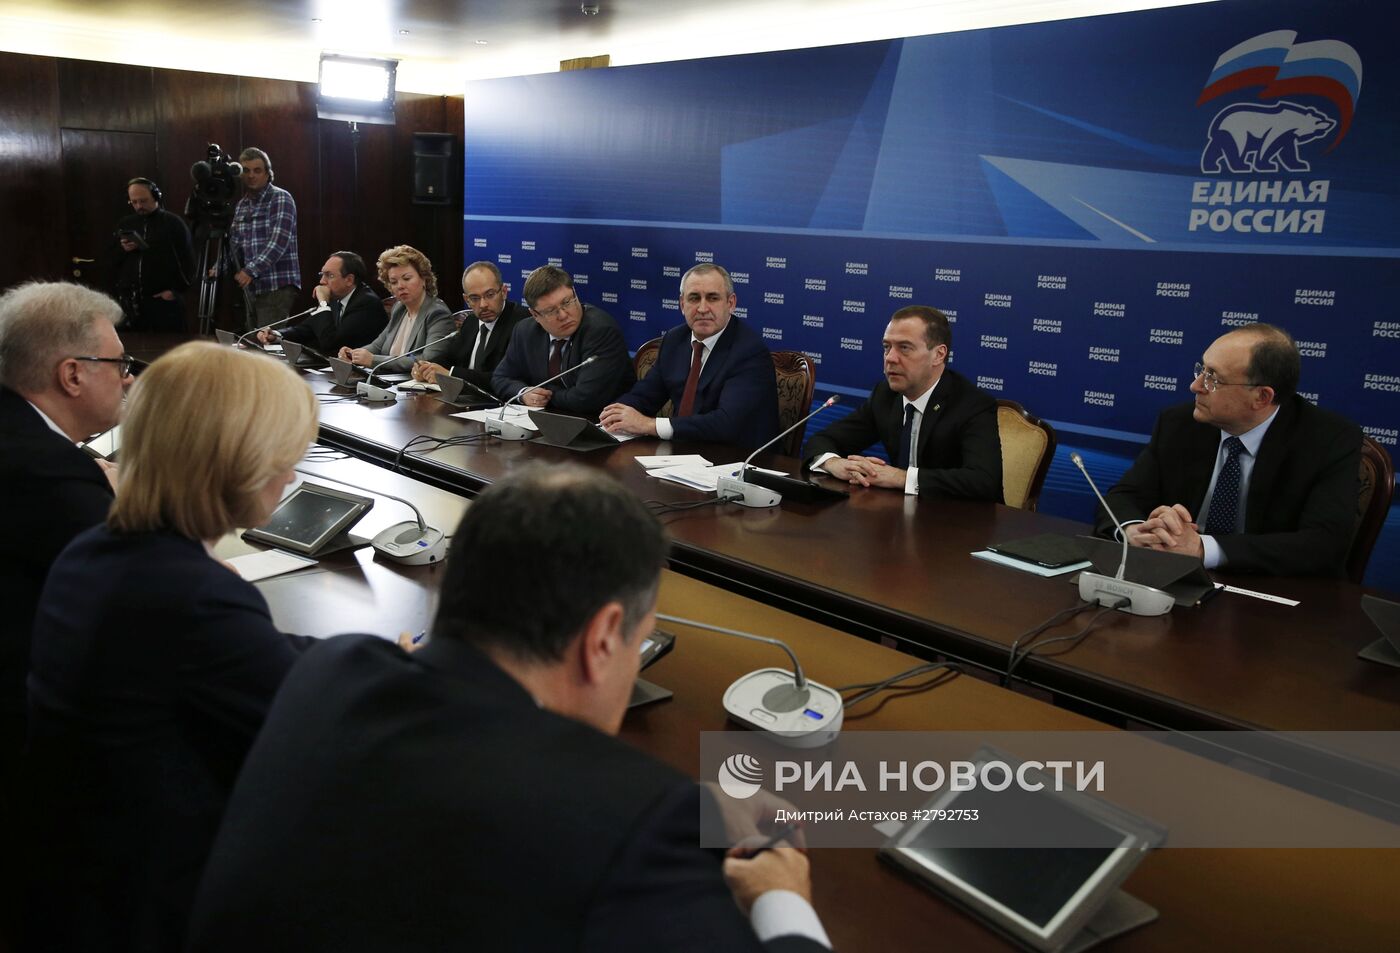 Премьер-министр РФ Д. Медведев провел заседание комиссии по подготовке программного документа "Единой России"